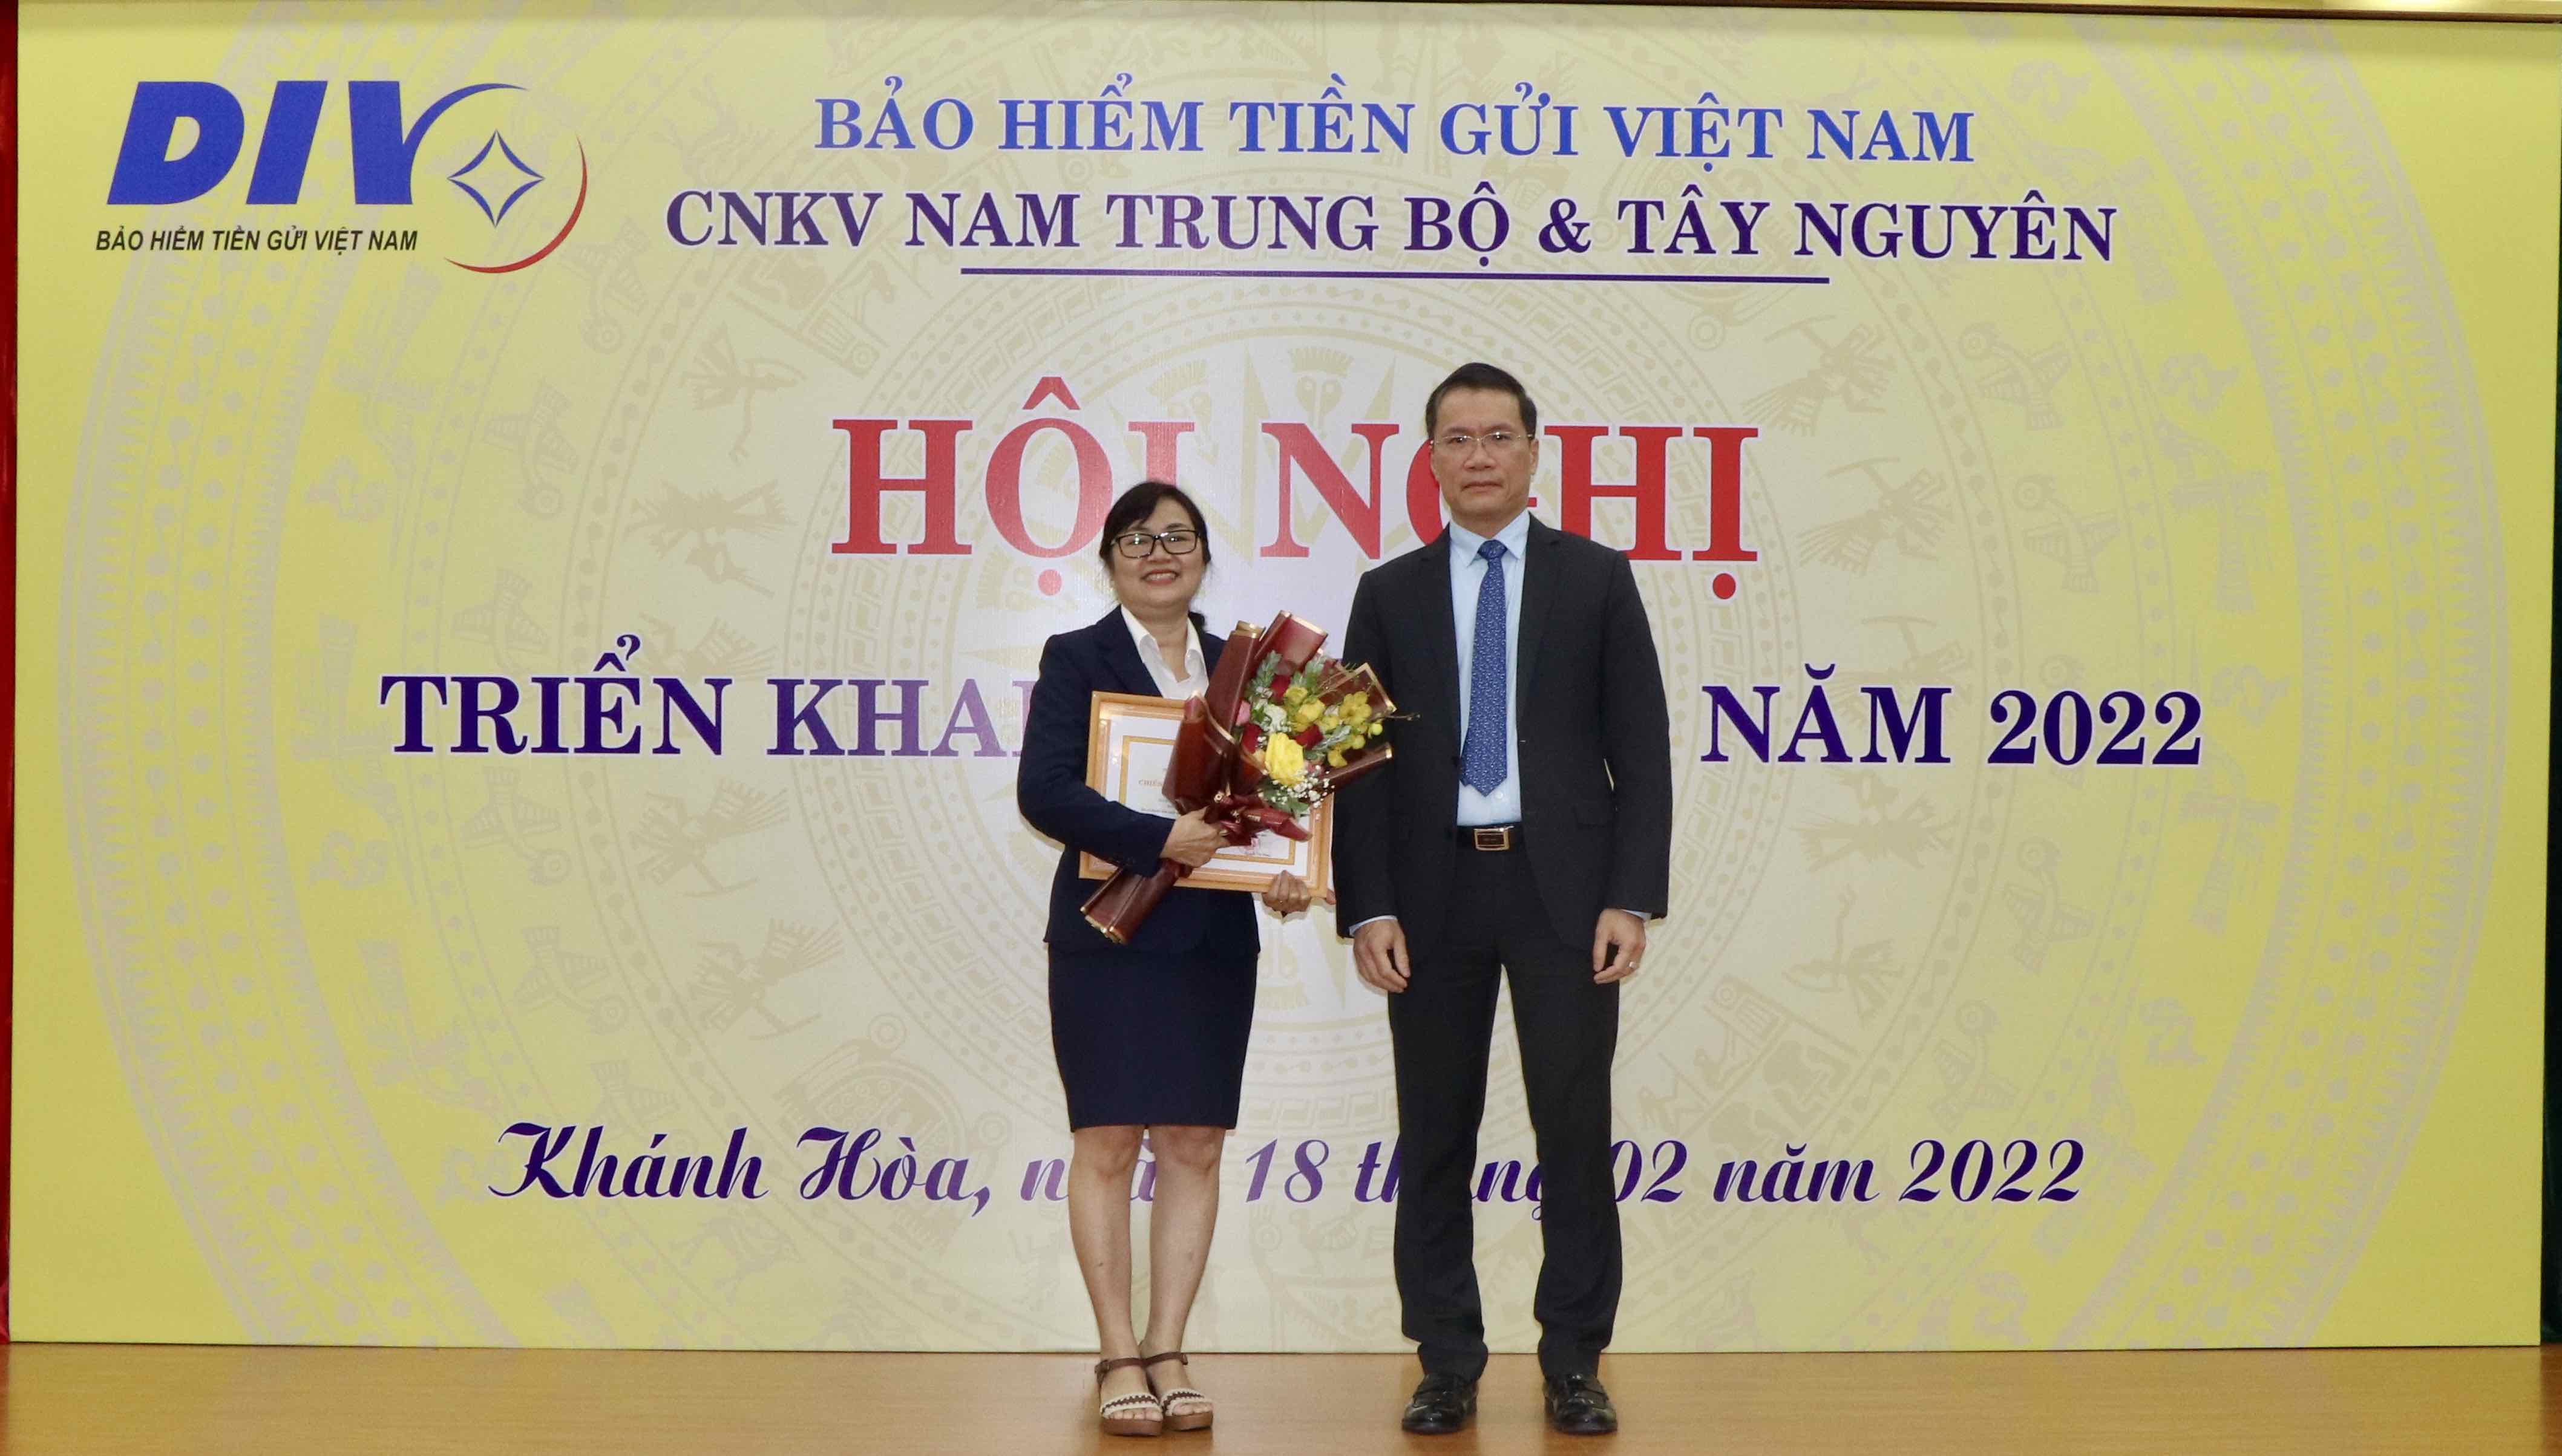 Lãnh đạo Bảo hiểm tiền gửi Việt Nam trao bằng khen của Ngân hàng Nhà nước lãnh đạo Chi nhánh Bảo hiểm tiền gửi Việt Nam khu vực Nam Trung bộ và Tây nguyên